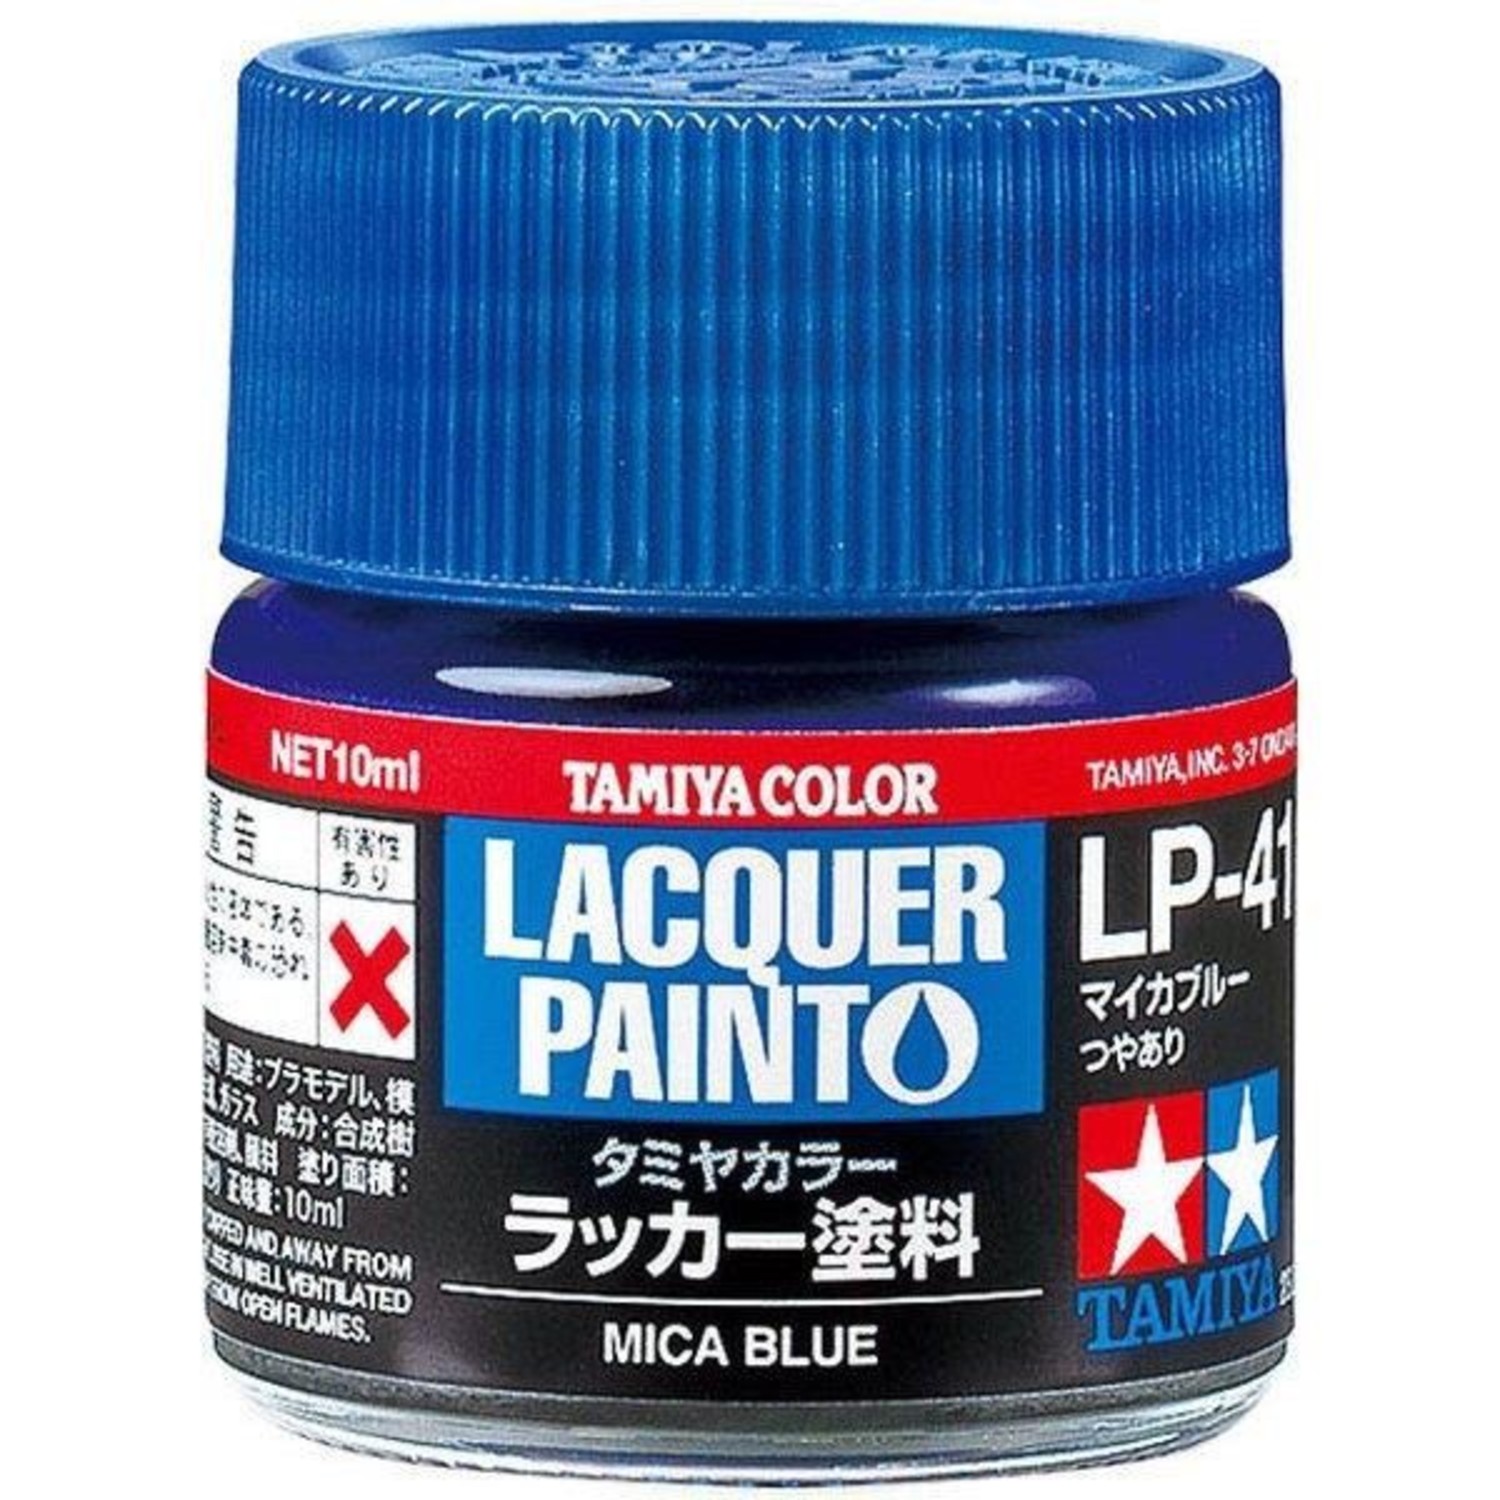 Tamiya Tamiya Lacquer Paint Mica Blue Lp 41 Acercmodels